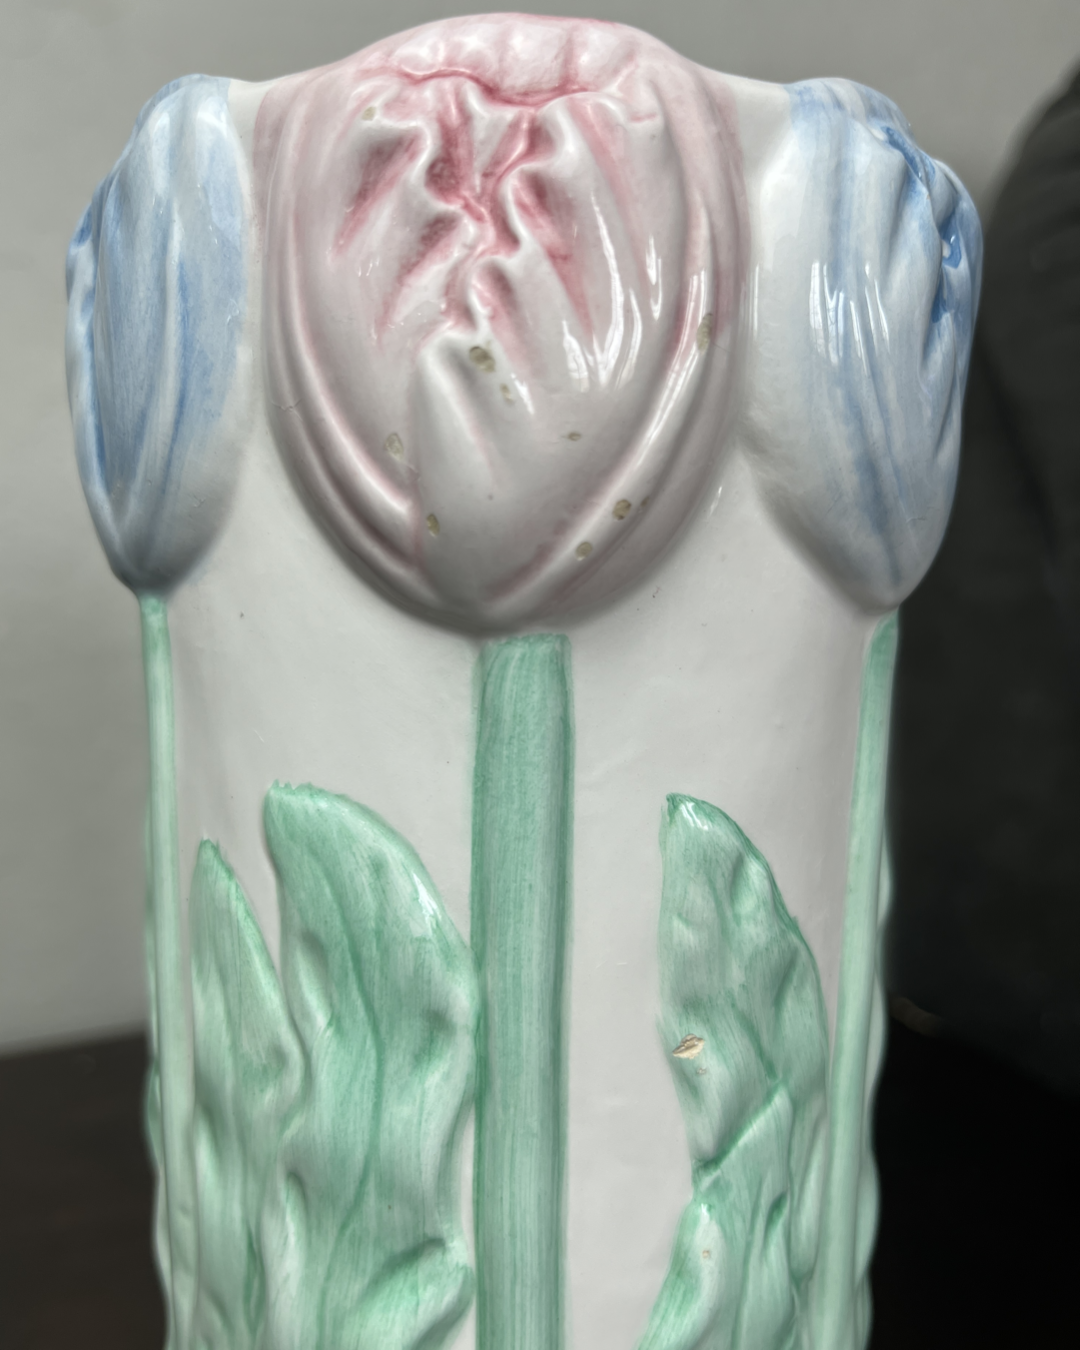 Bloomin' Delight Ceramic Vase